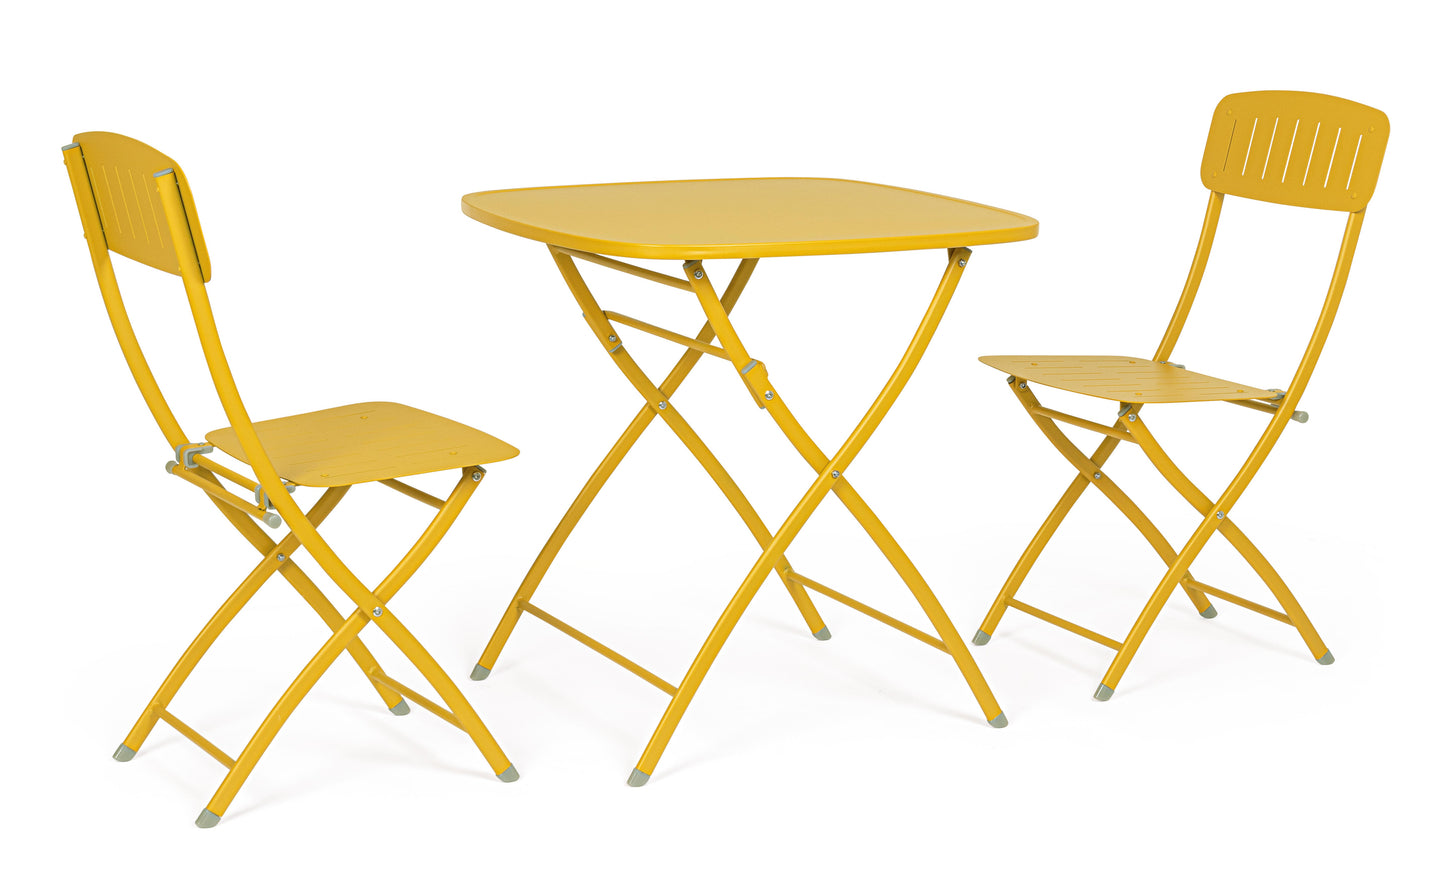 Set bistrot da esterno pieghevole tavolo e 2 sedie in acciaio verniciato diversi colori